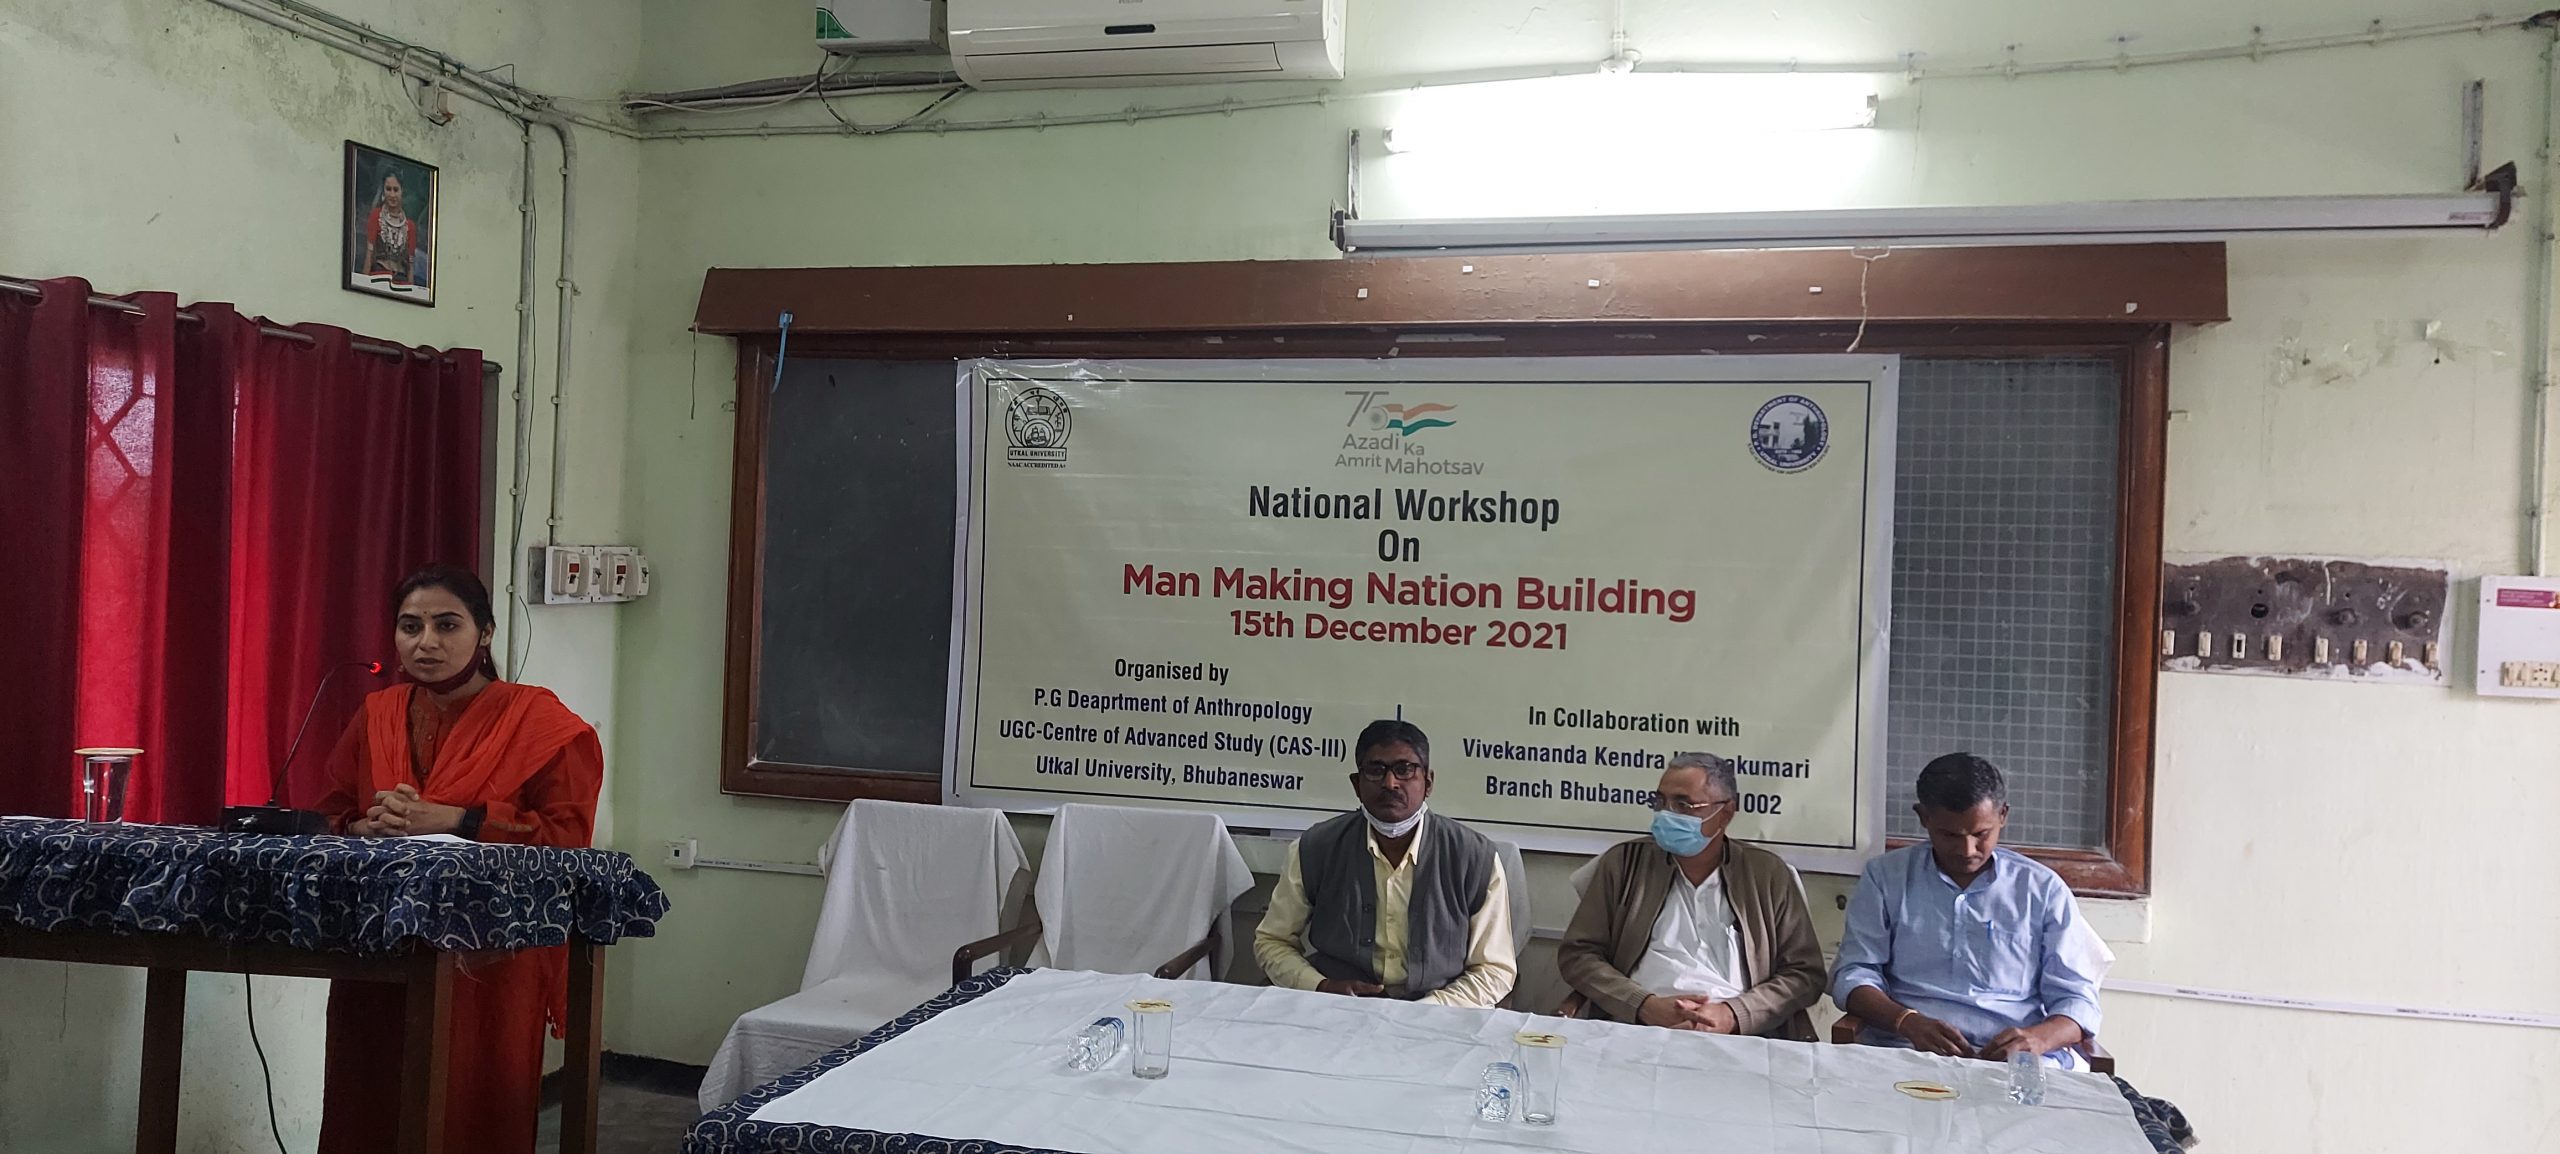 National Workshop on Man Making Nation Building